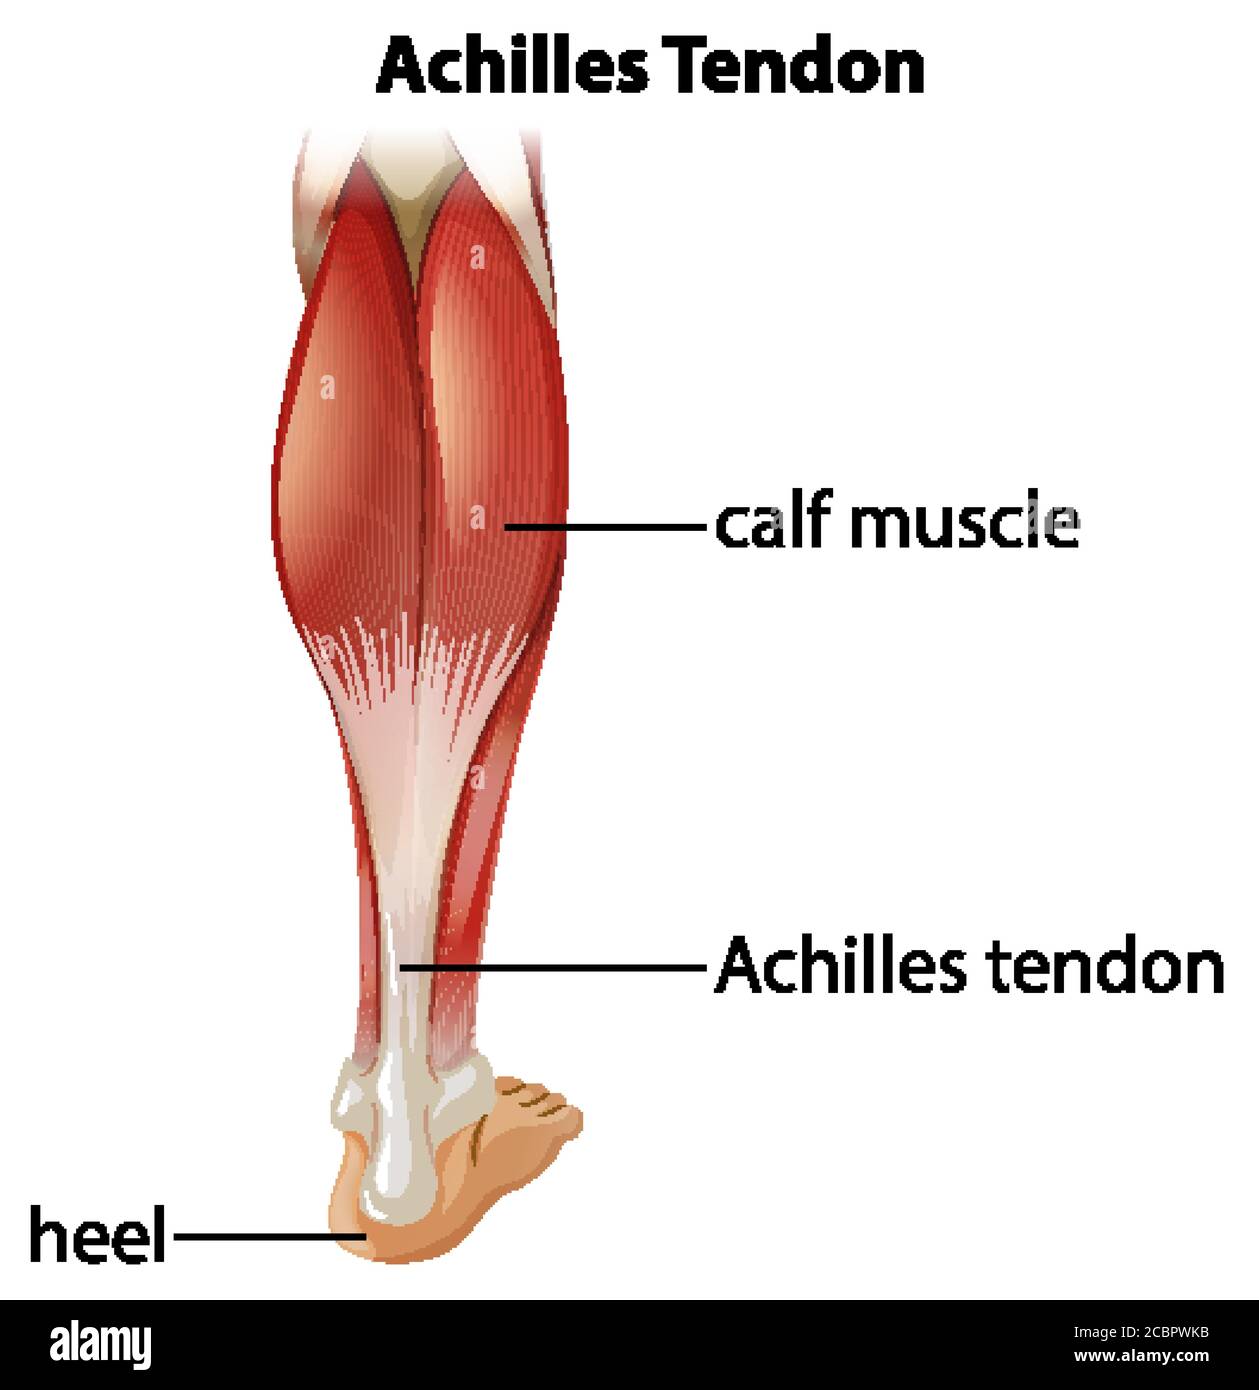 Infographie médicale de l'illustration du tendon d'achille Illustration de Vecteur